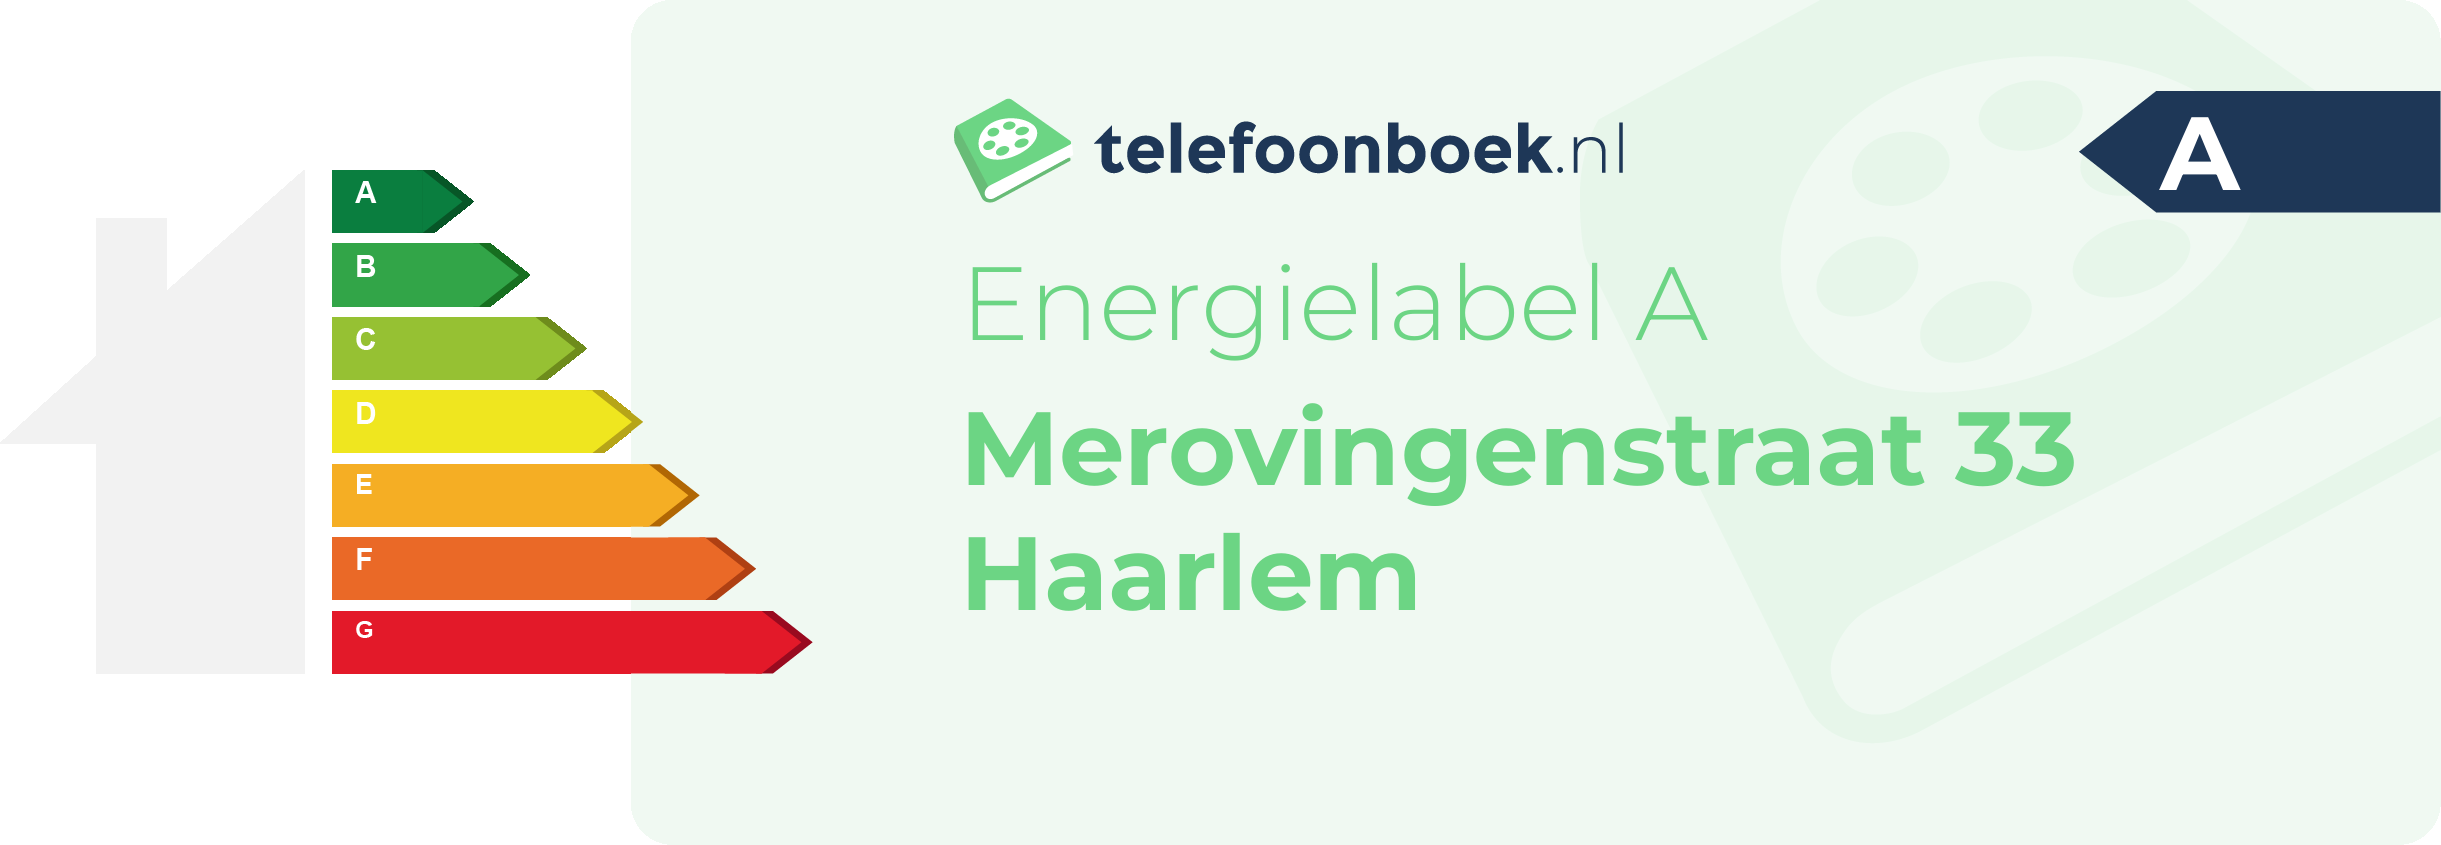 Energielabel Merovingenstraat 33 Haarlem